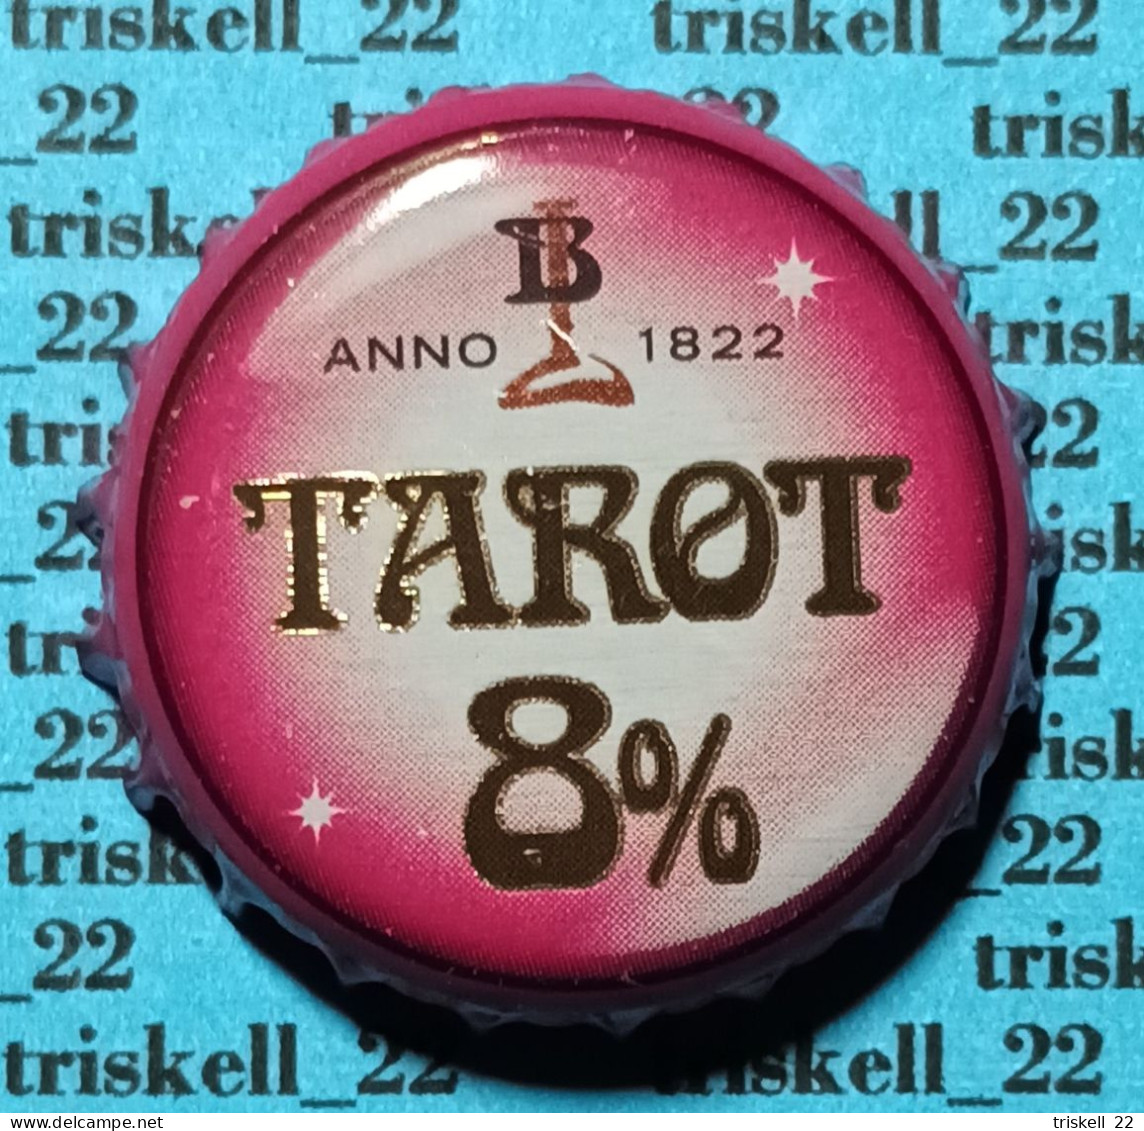 Tarot Noir    Lot N° 39 - Beer